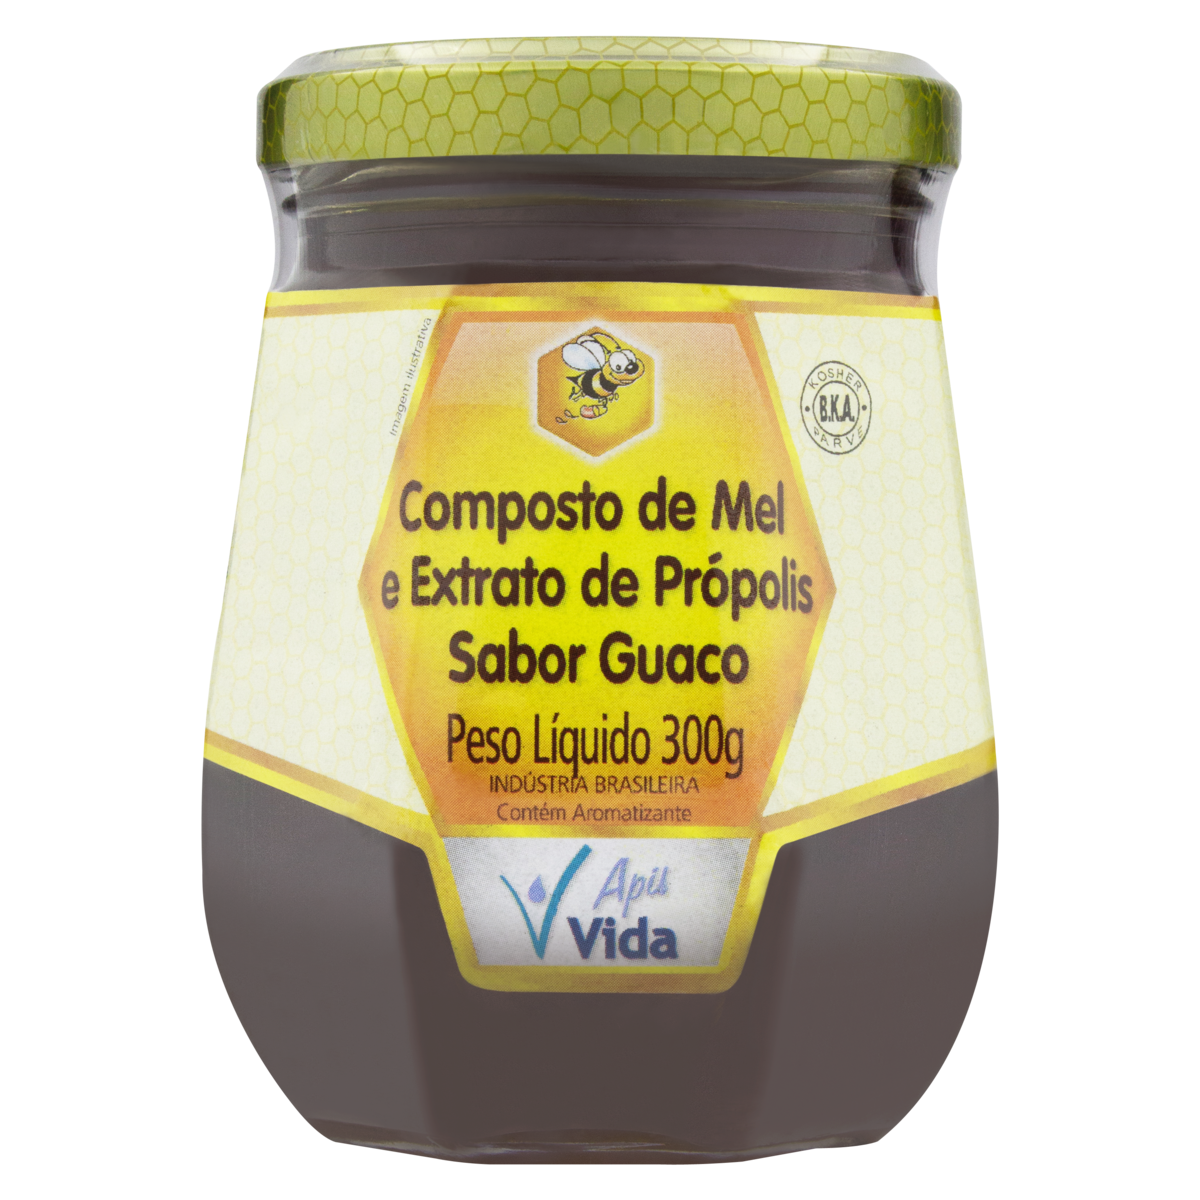 7897918200218 - COMPOSTO DE MEL COM EXTRATO DE PRÓPOLIS GUACO APIS VIDA VIDRO 300G